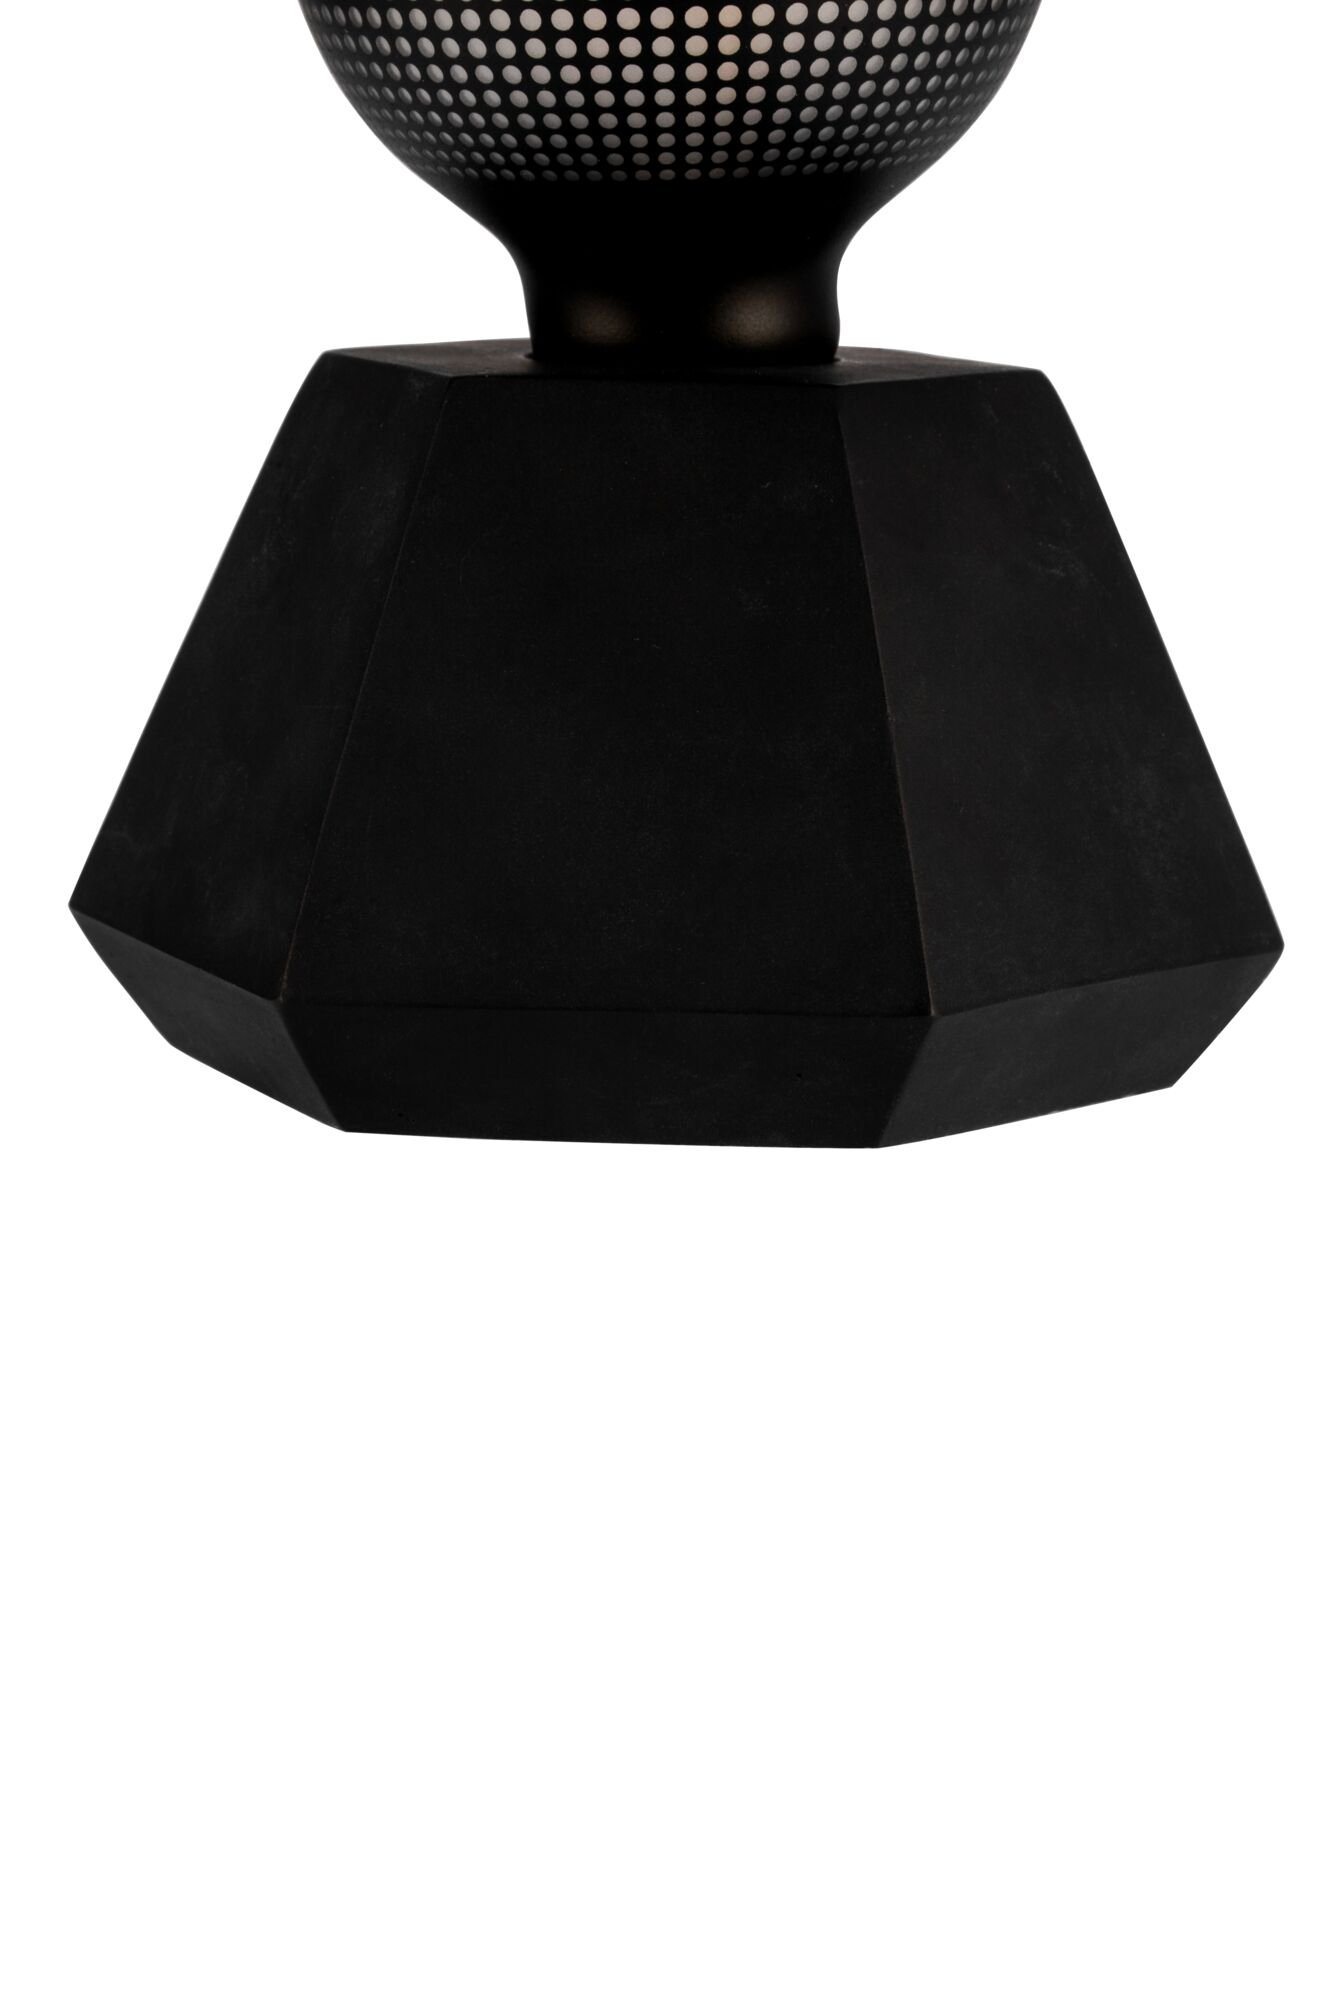 Pauleen LED-tafellamp Black Flare E27 2700K 8lm 0,3W Zwart